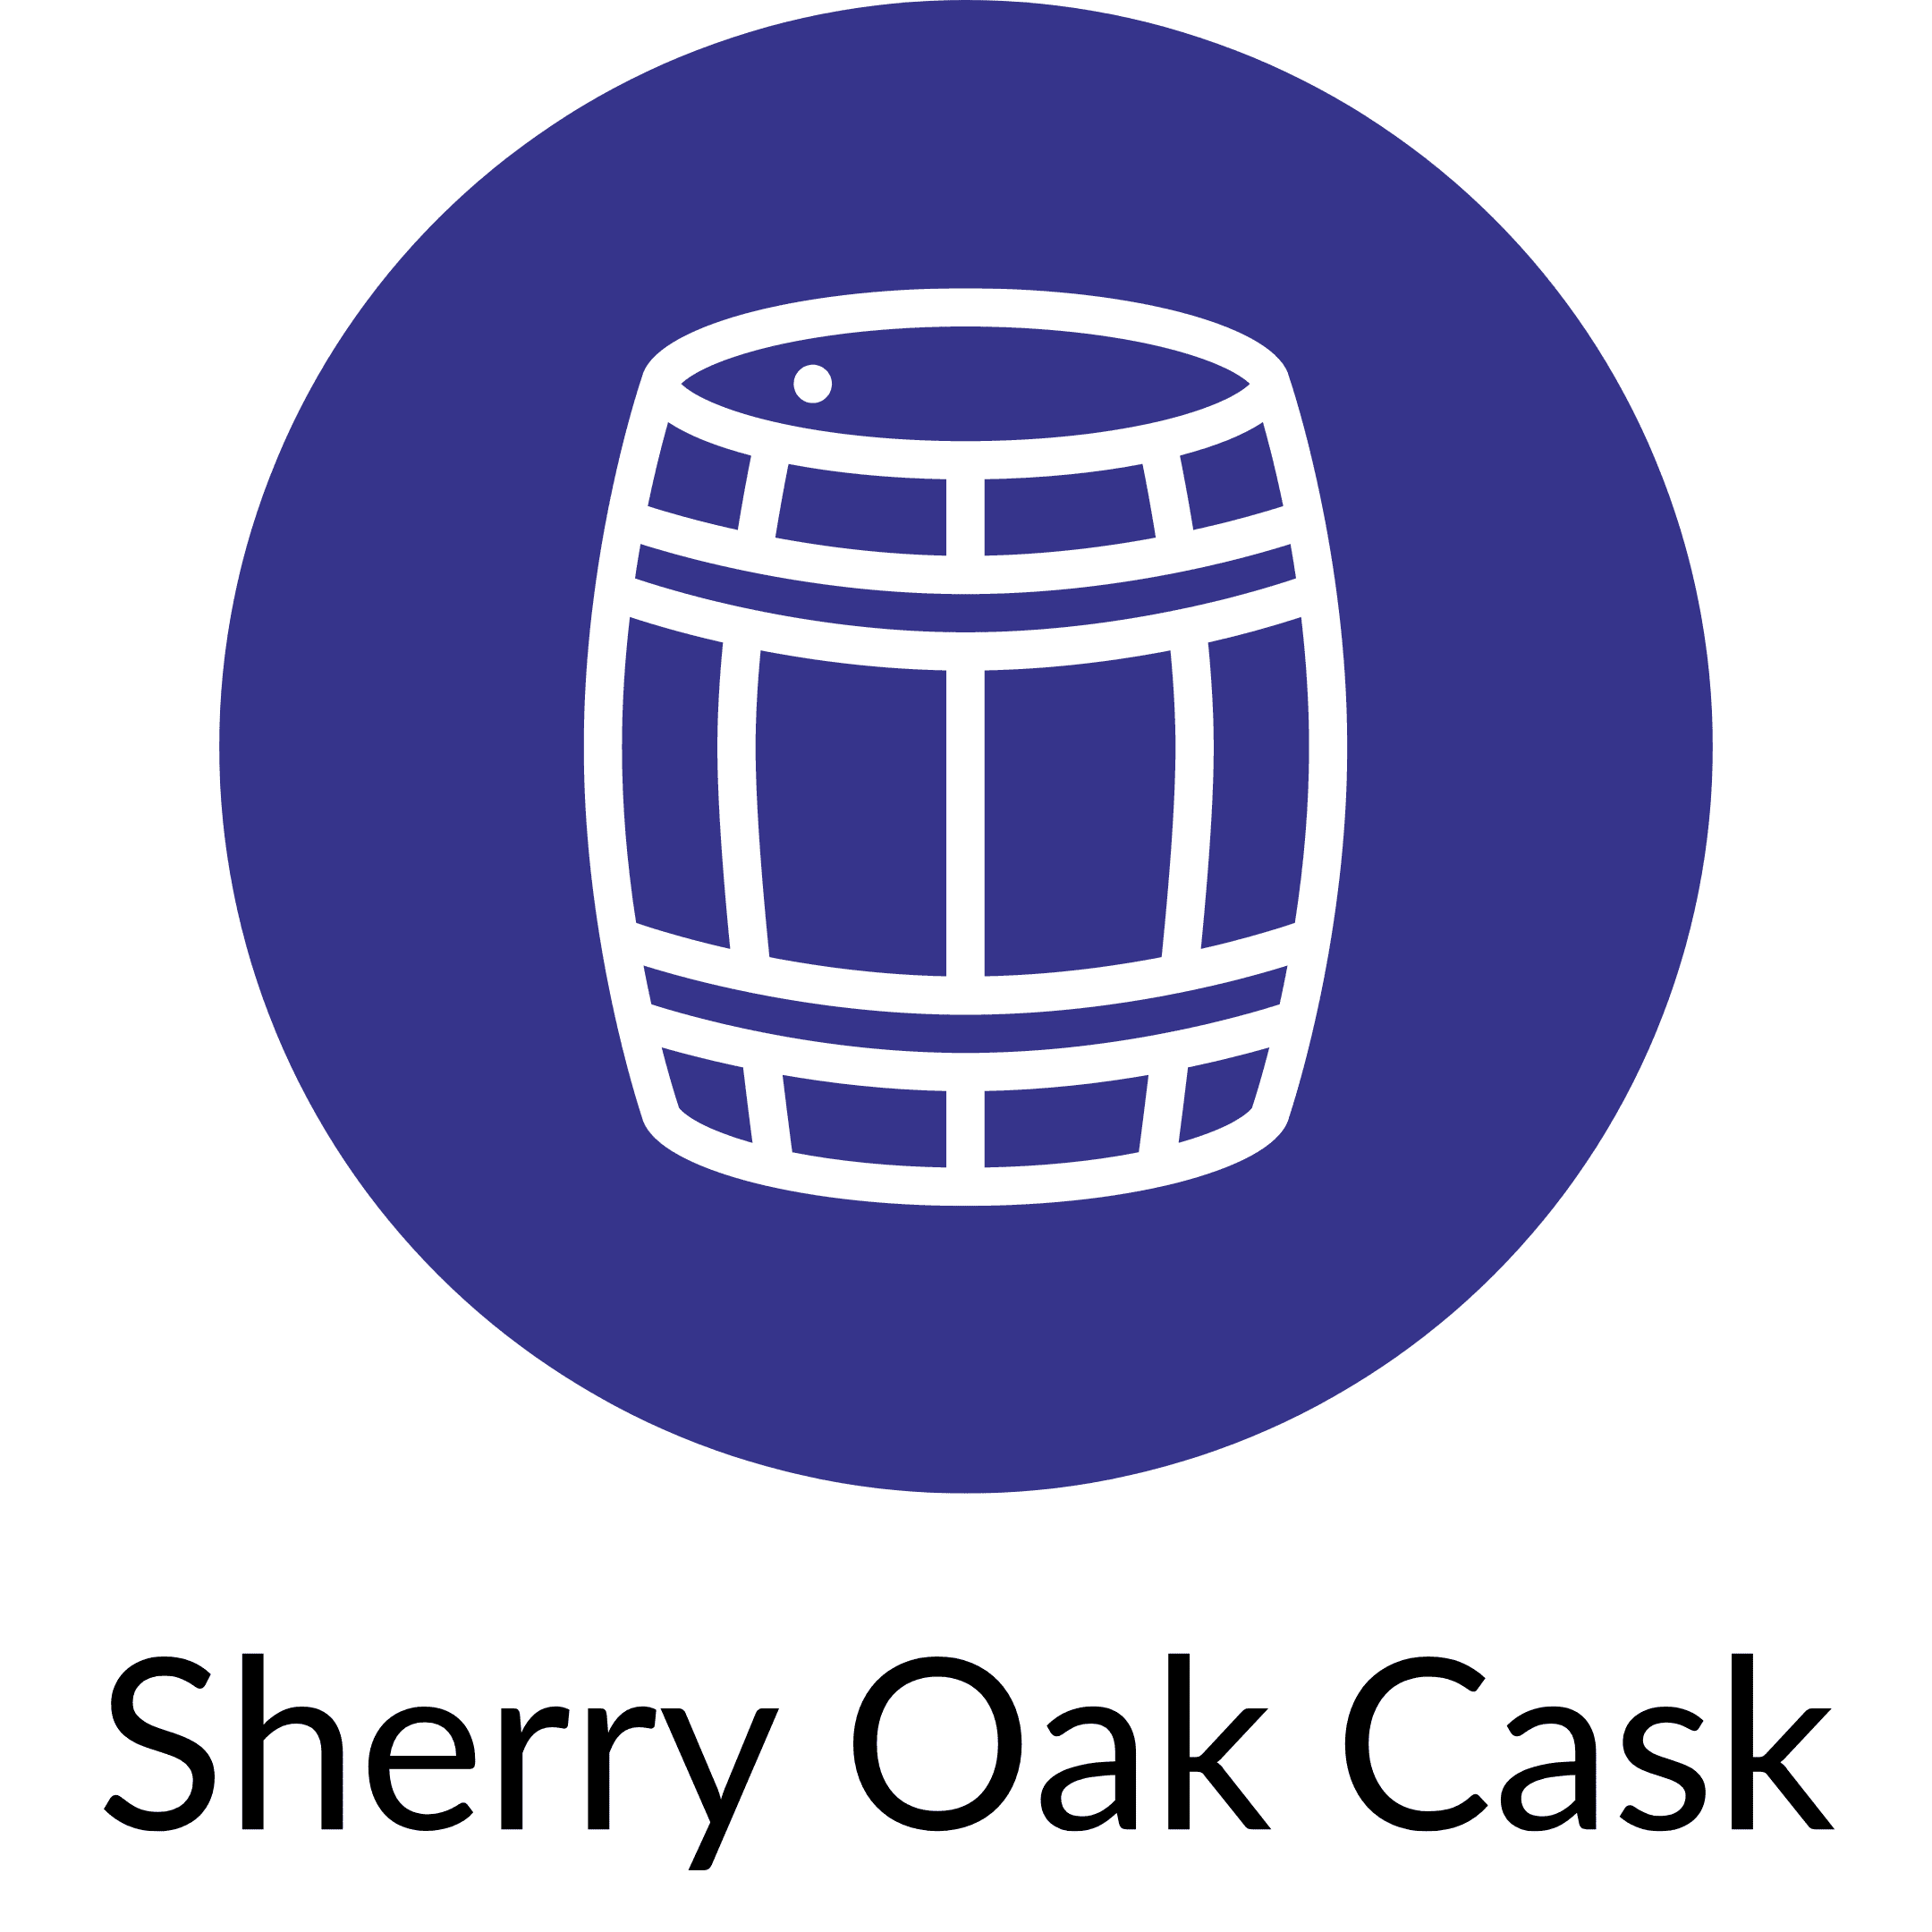 Sherry Oak Cask